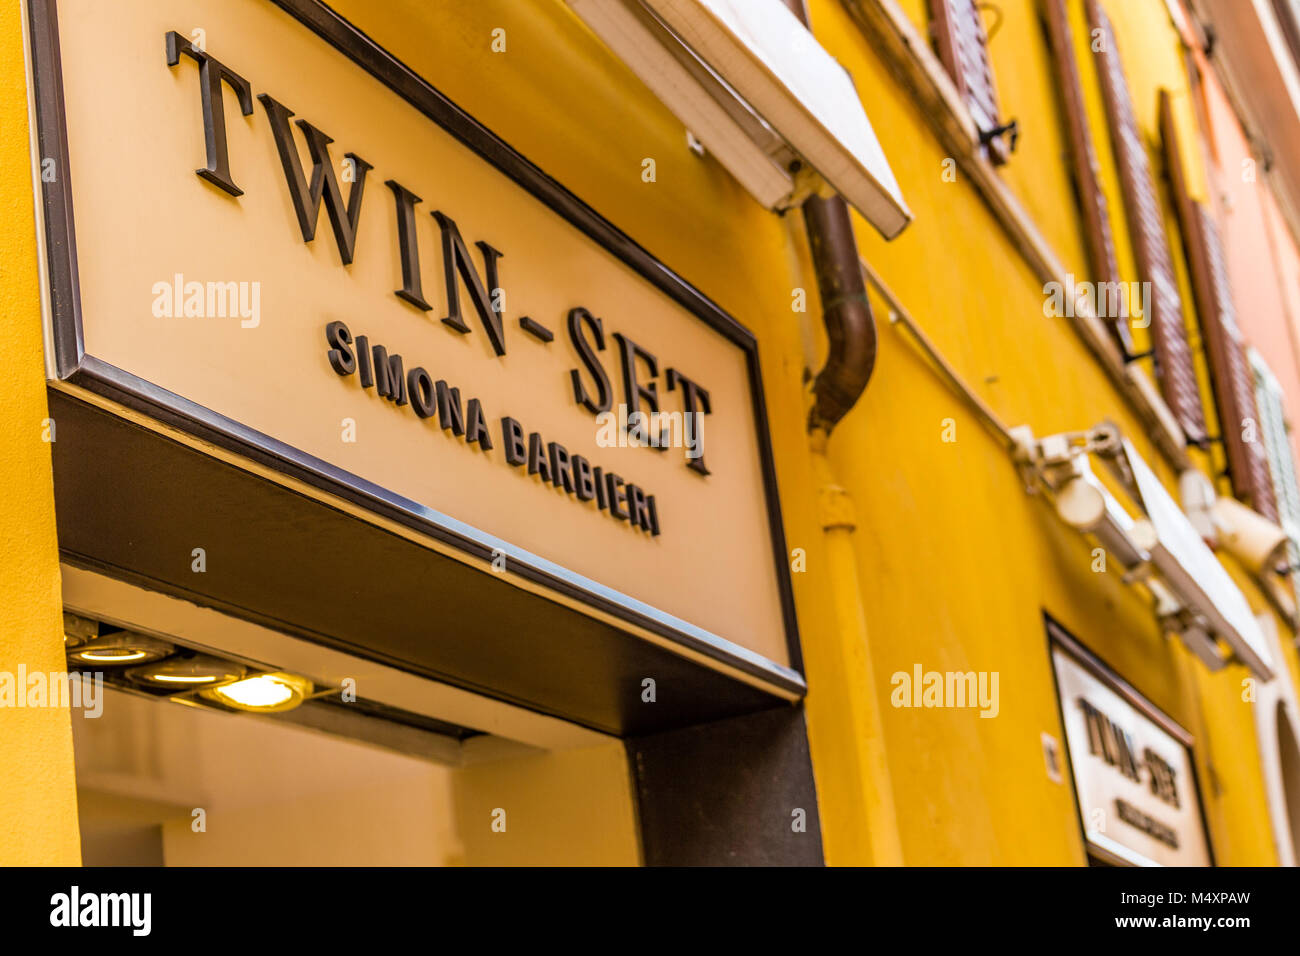 RAVENNA, Italien - 15. FEBRUAR 2018: TWIN-SET SIMONA BARBIERI logo Zeichen der Straße Shop. Der neue Eigentümer, der Private Equity Fonds Carlyle wird in Stockfoto